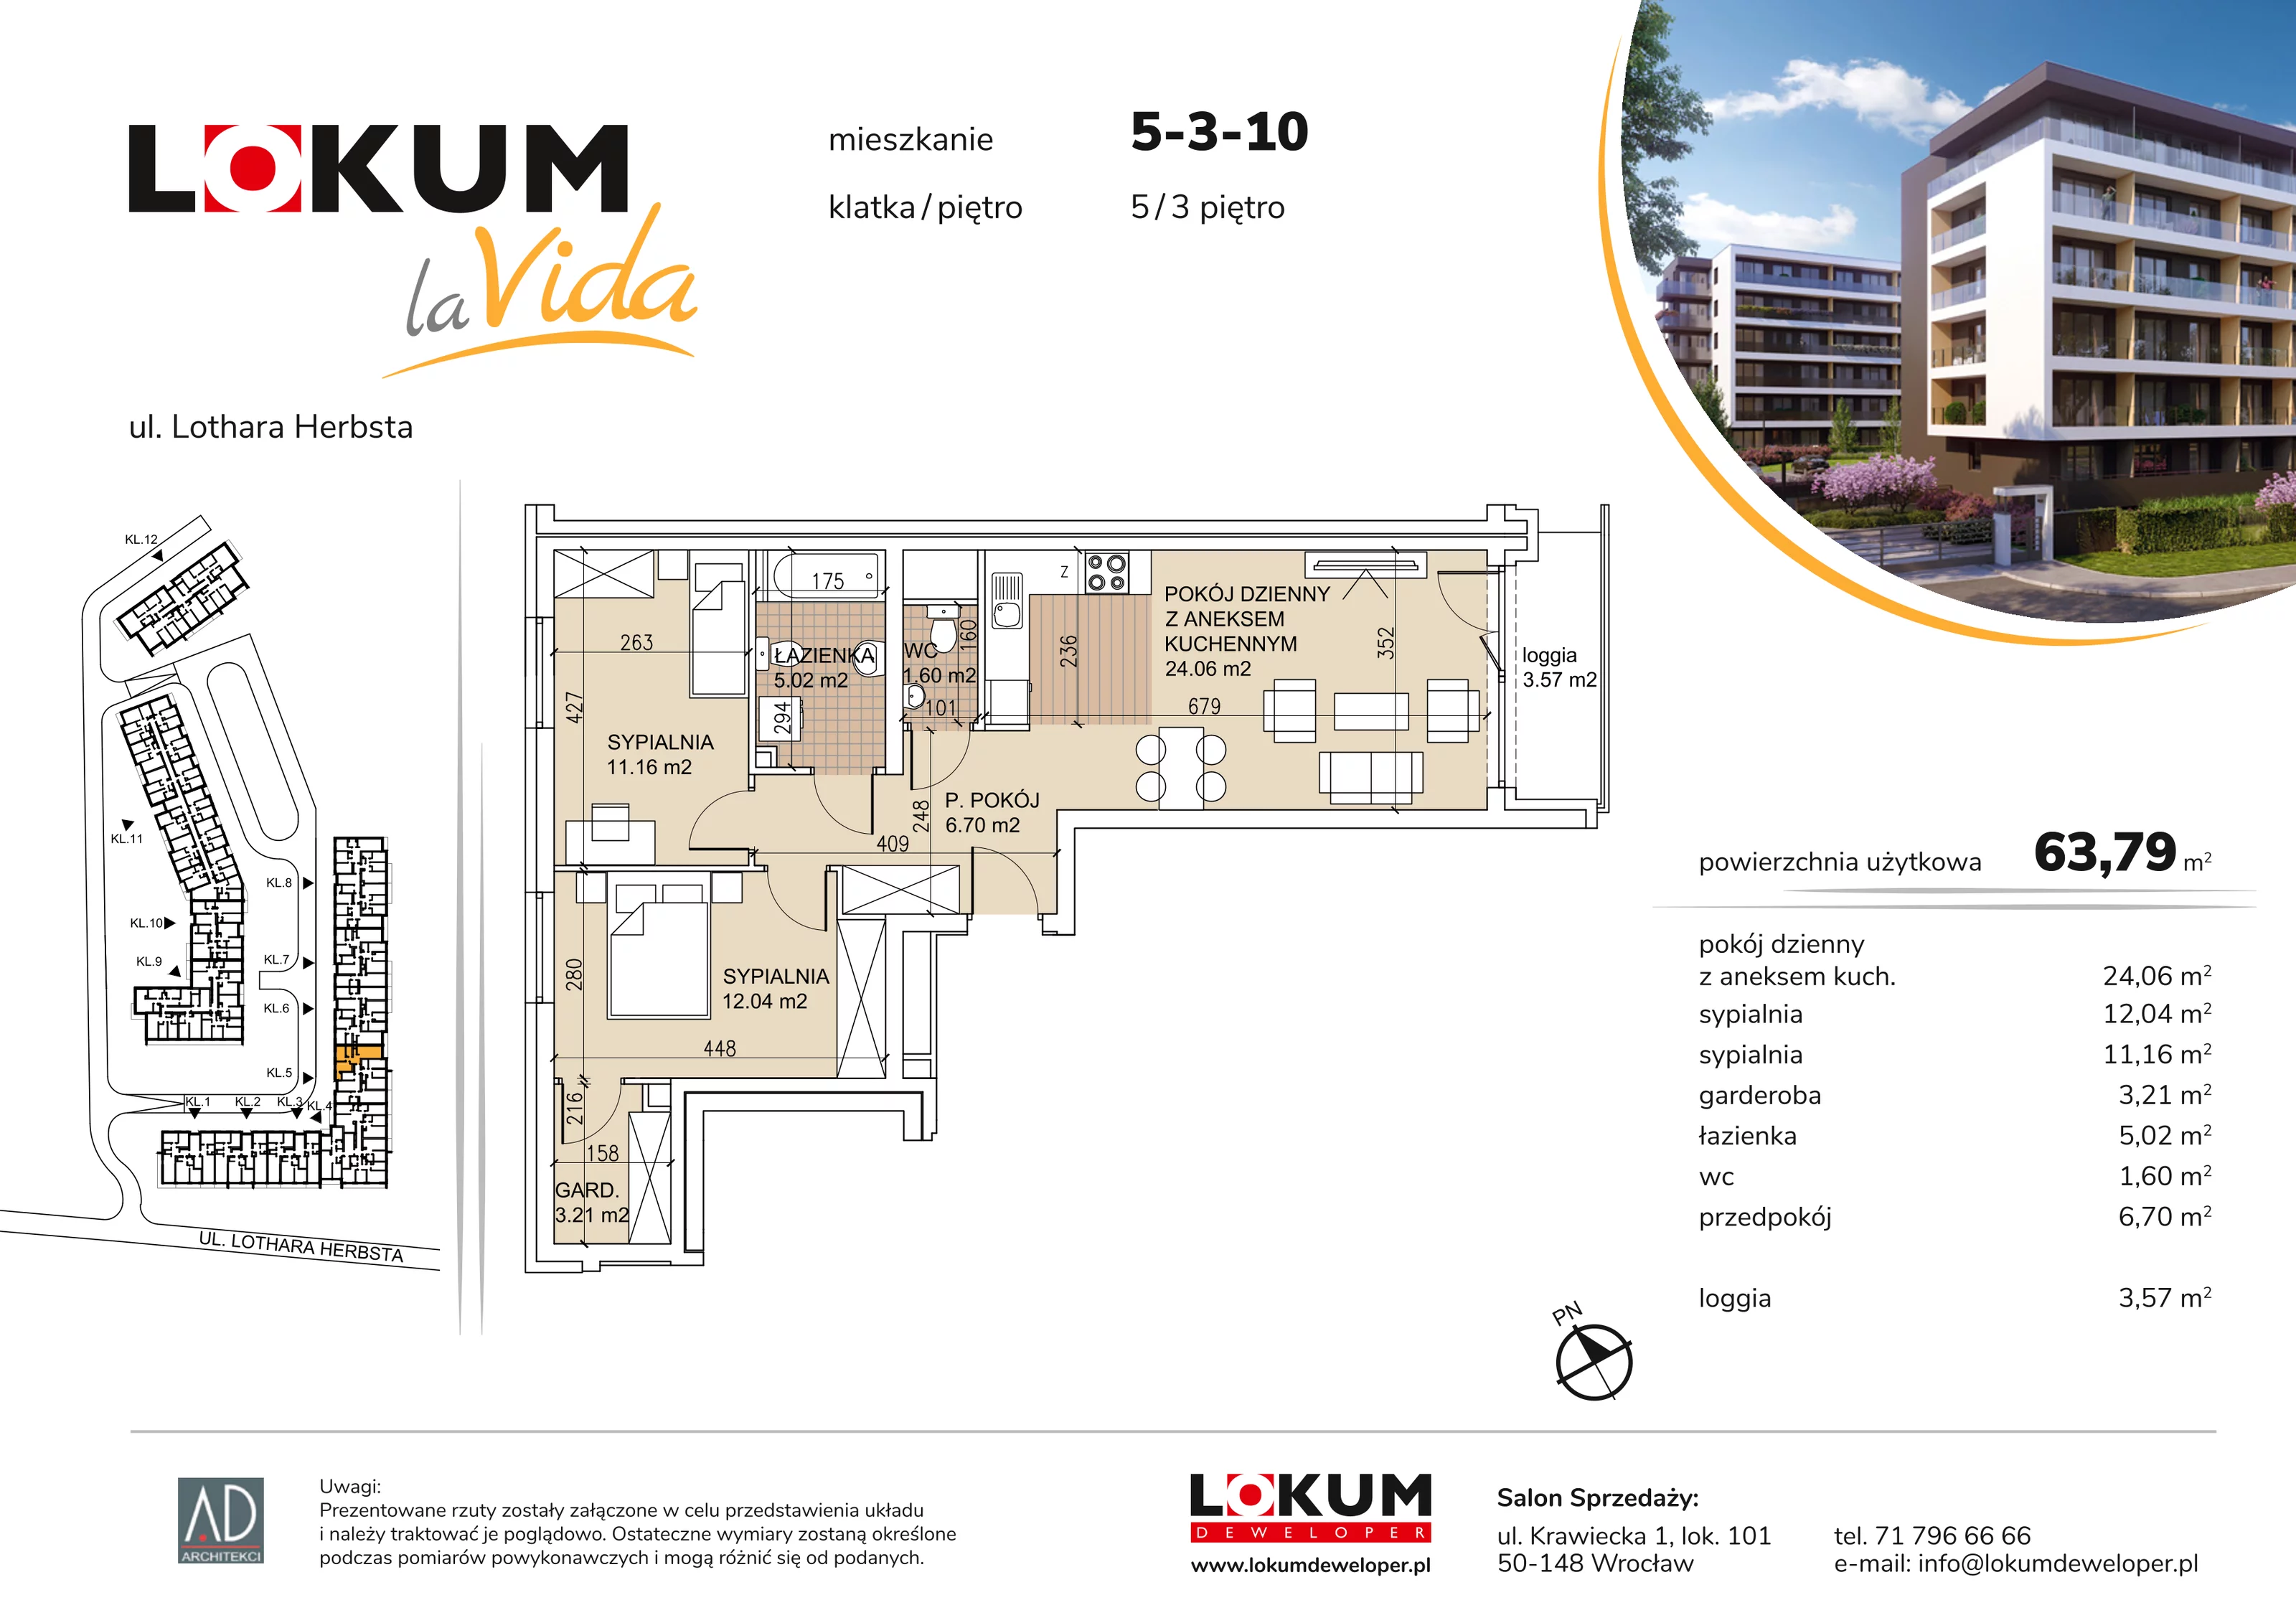 Mieszkanie 63,79 m², piętro 3, oferta nr 5-3-10, Lokum la Vida, Wrocław, Sołtysowice, ul. Lothara Herbsta